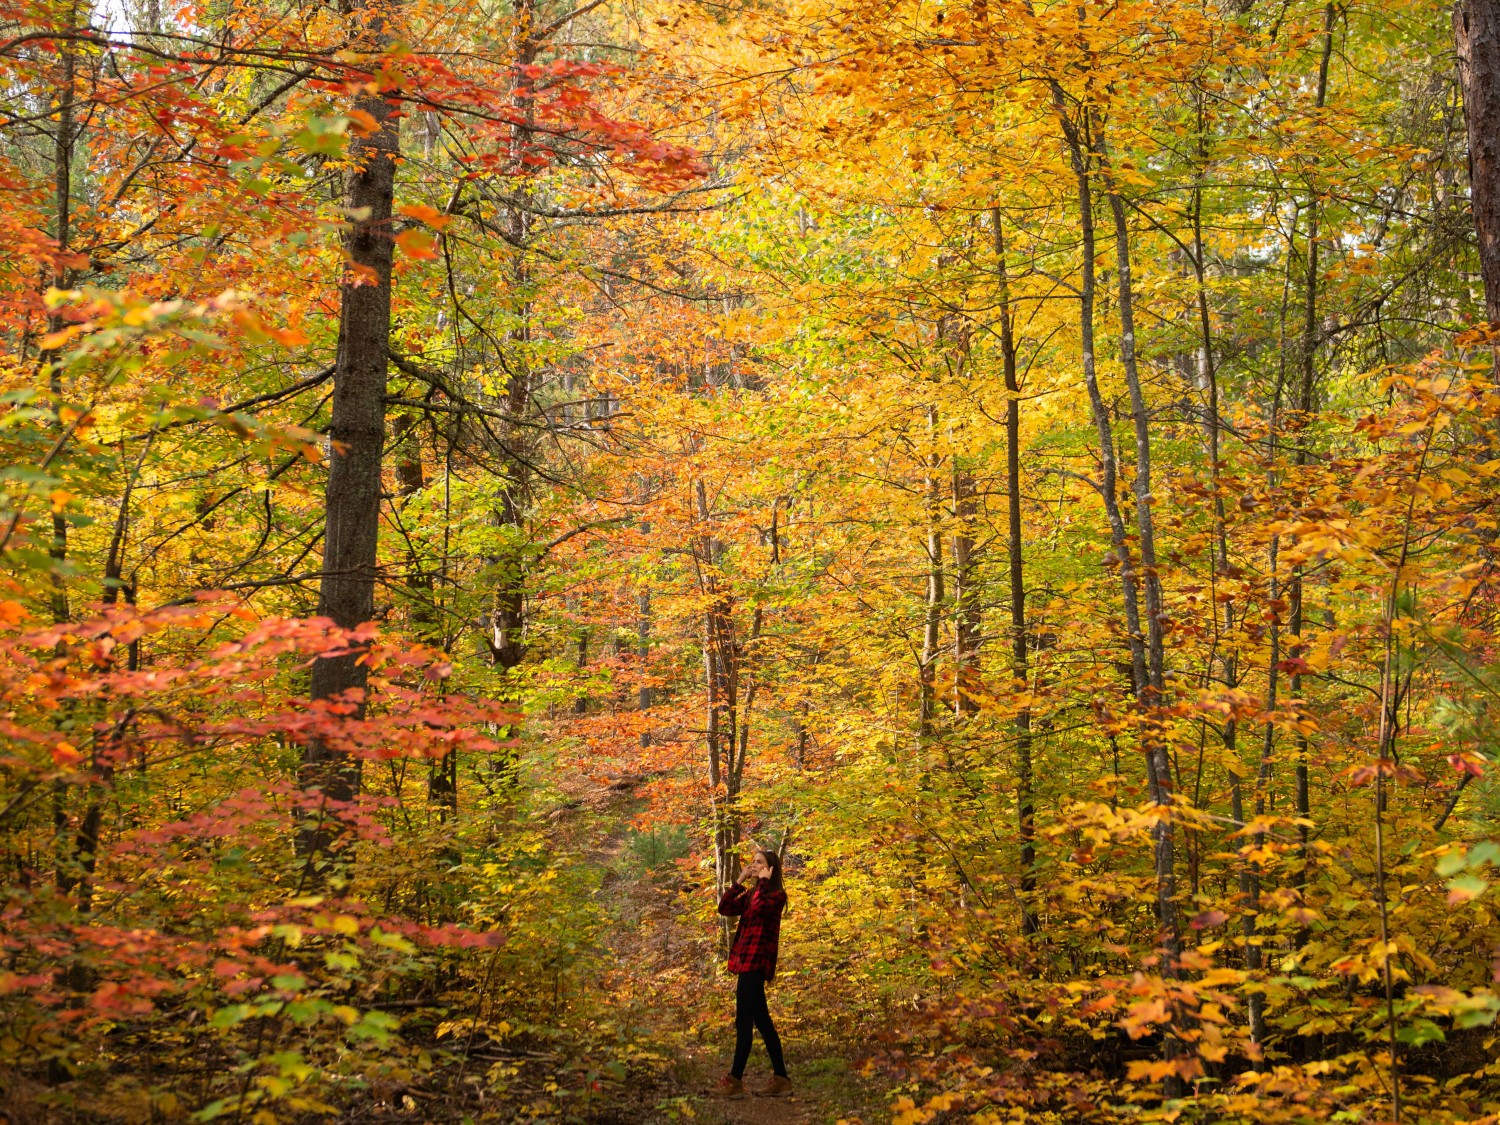 Une personne sur un sentier de randonnée à mi-parcours. Elle est entourée de grands arbres dont les feuilles sont passées au rouge, à l’orange et au jaune.